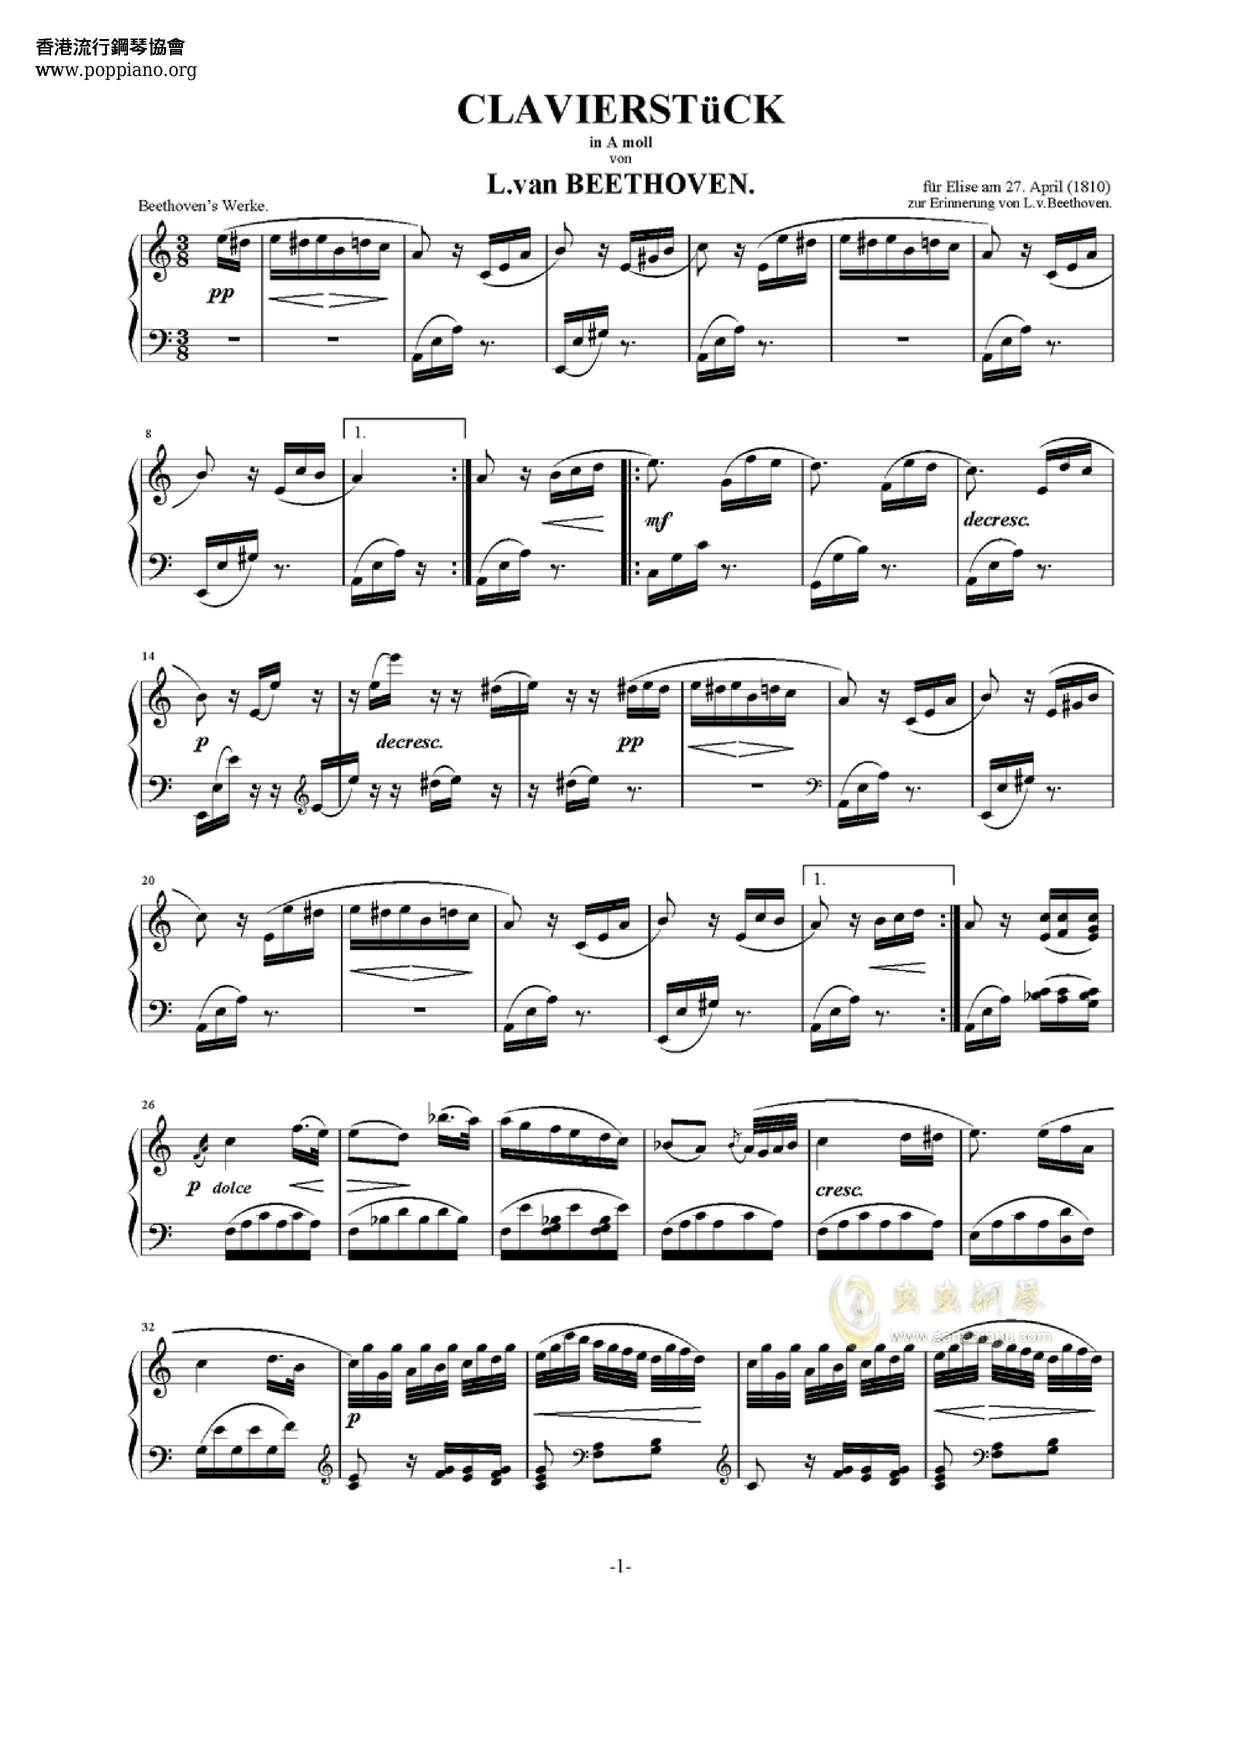 Bagatelle No. 25 in A Minor, WoO 59 Für Eliseピアノ譜